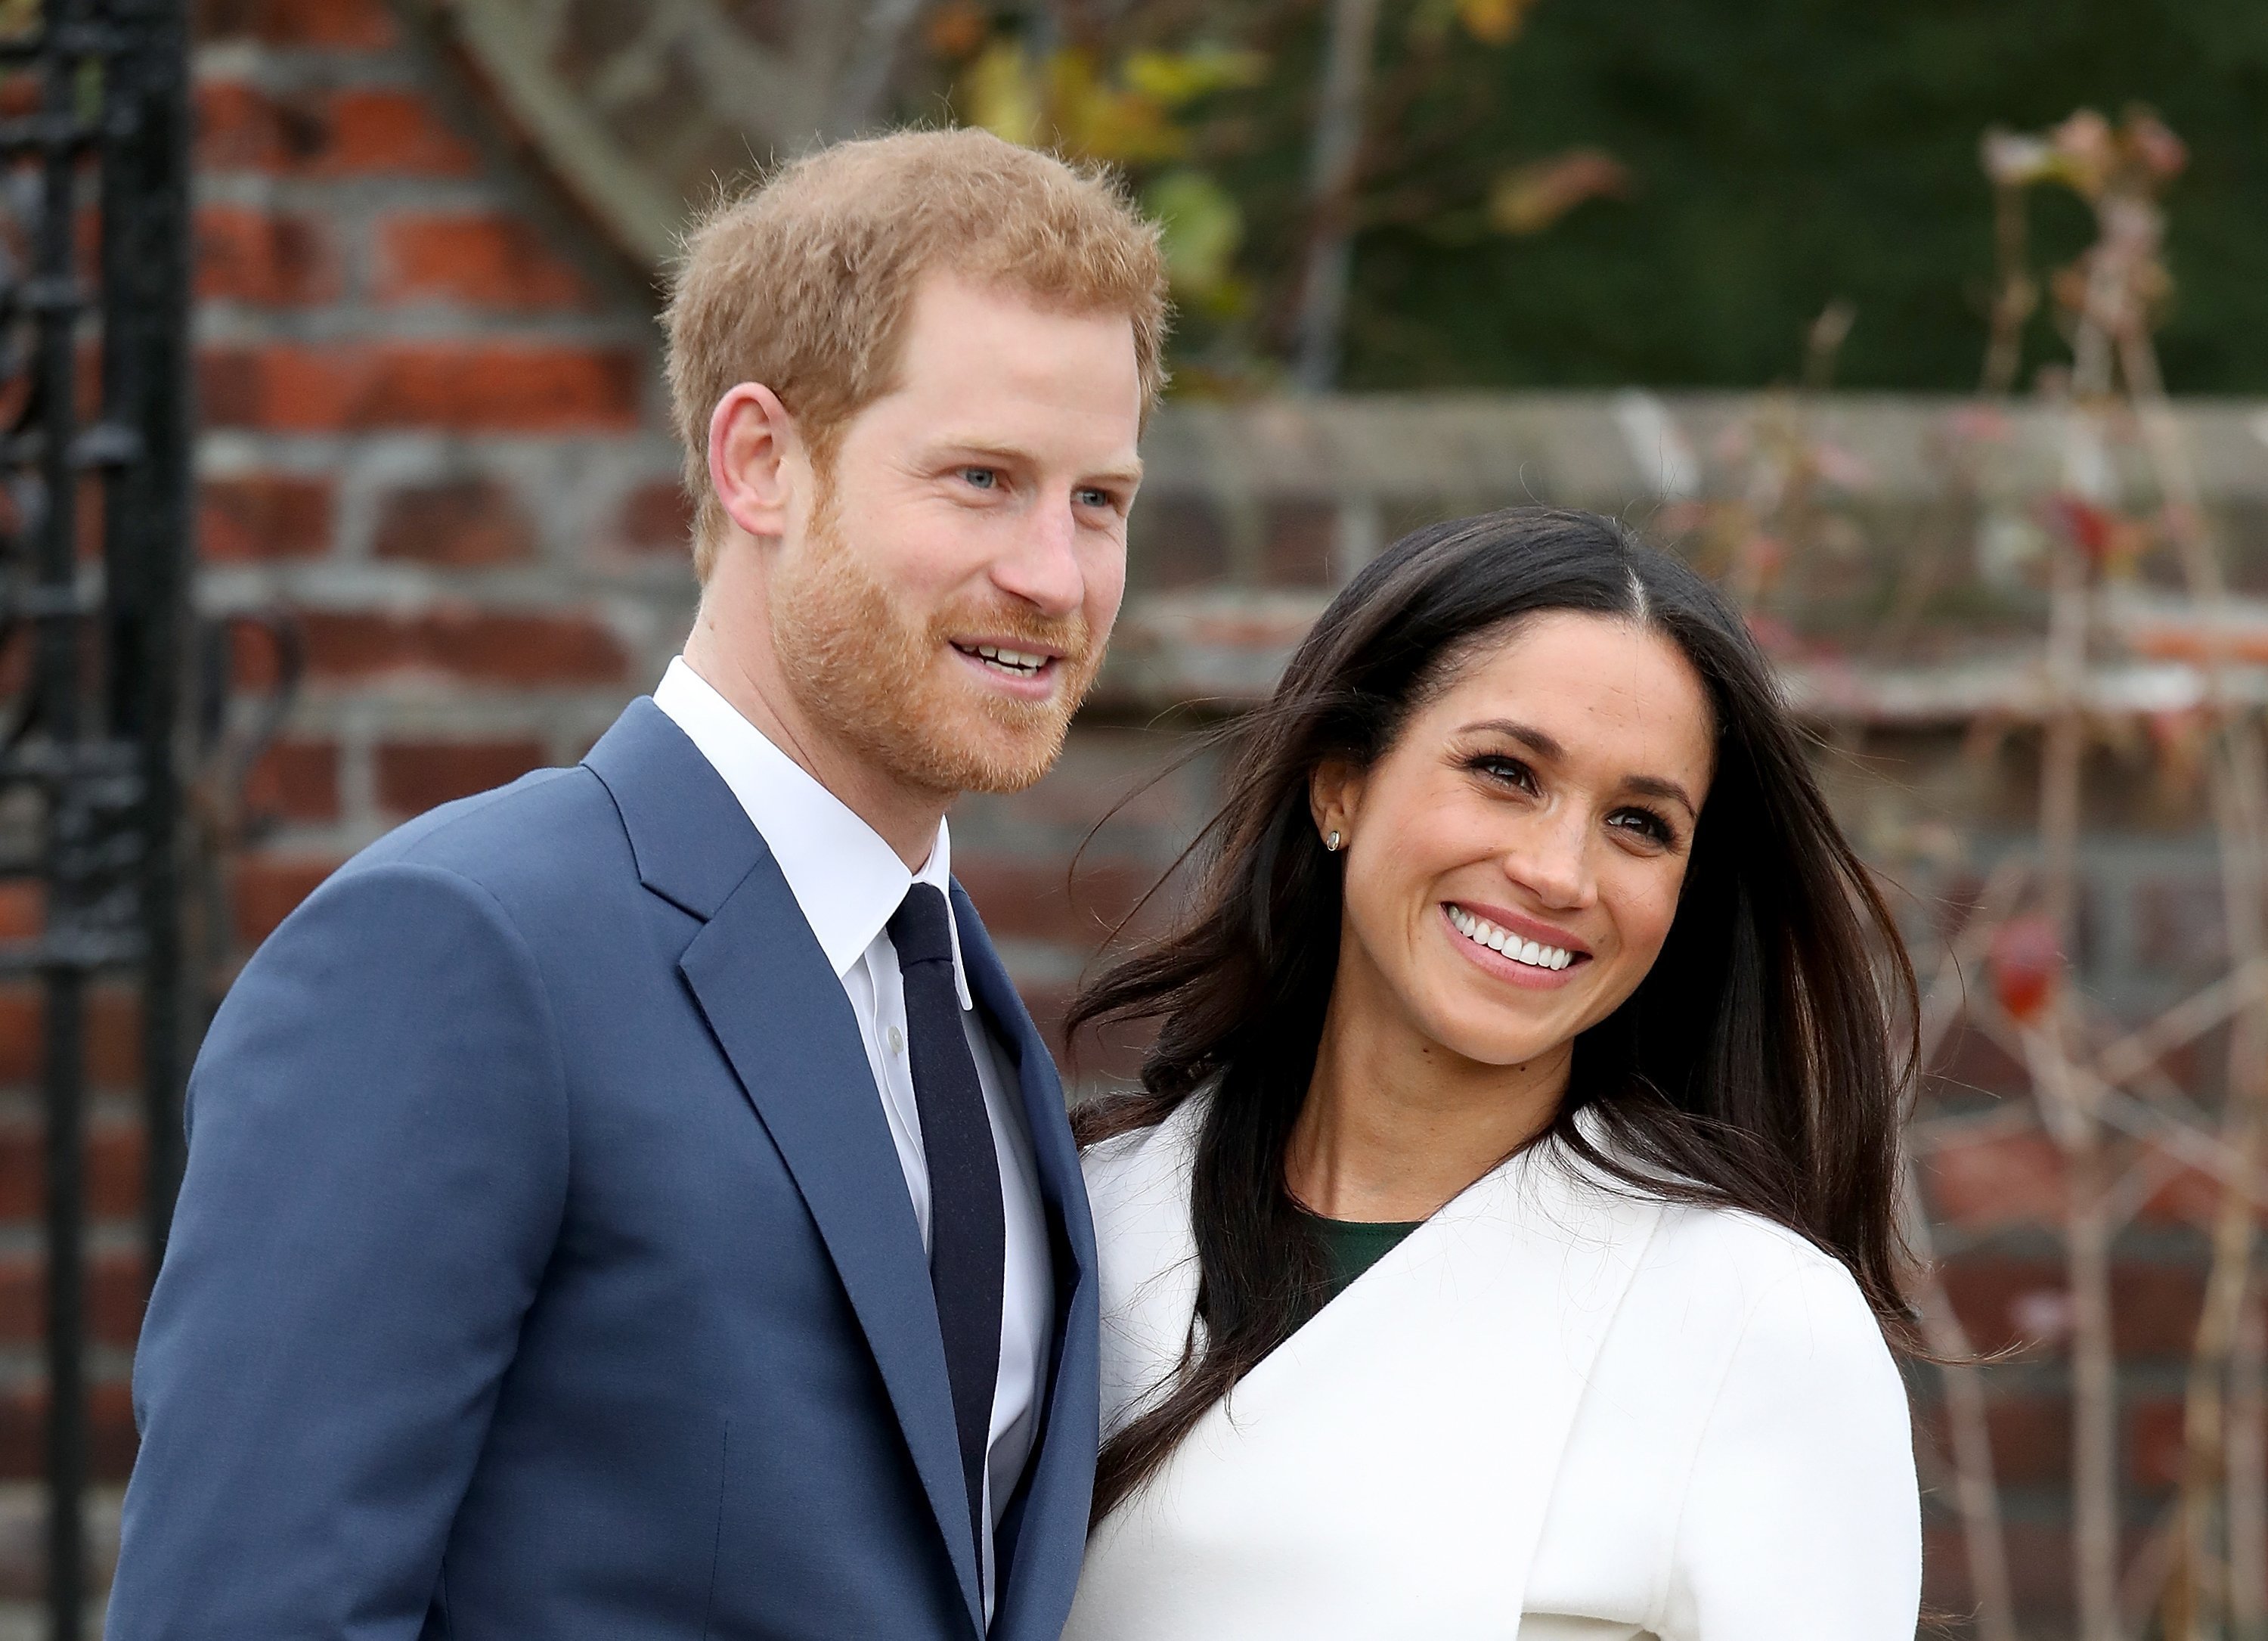 Le Prince Harry et l'actrice Meghan Markle lors d'un shooting officiel pour annoncer leurs fiançailles aux Sunken Gardens de Kensington Palace le 27 novembre 2017| Photo : Getty Images